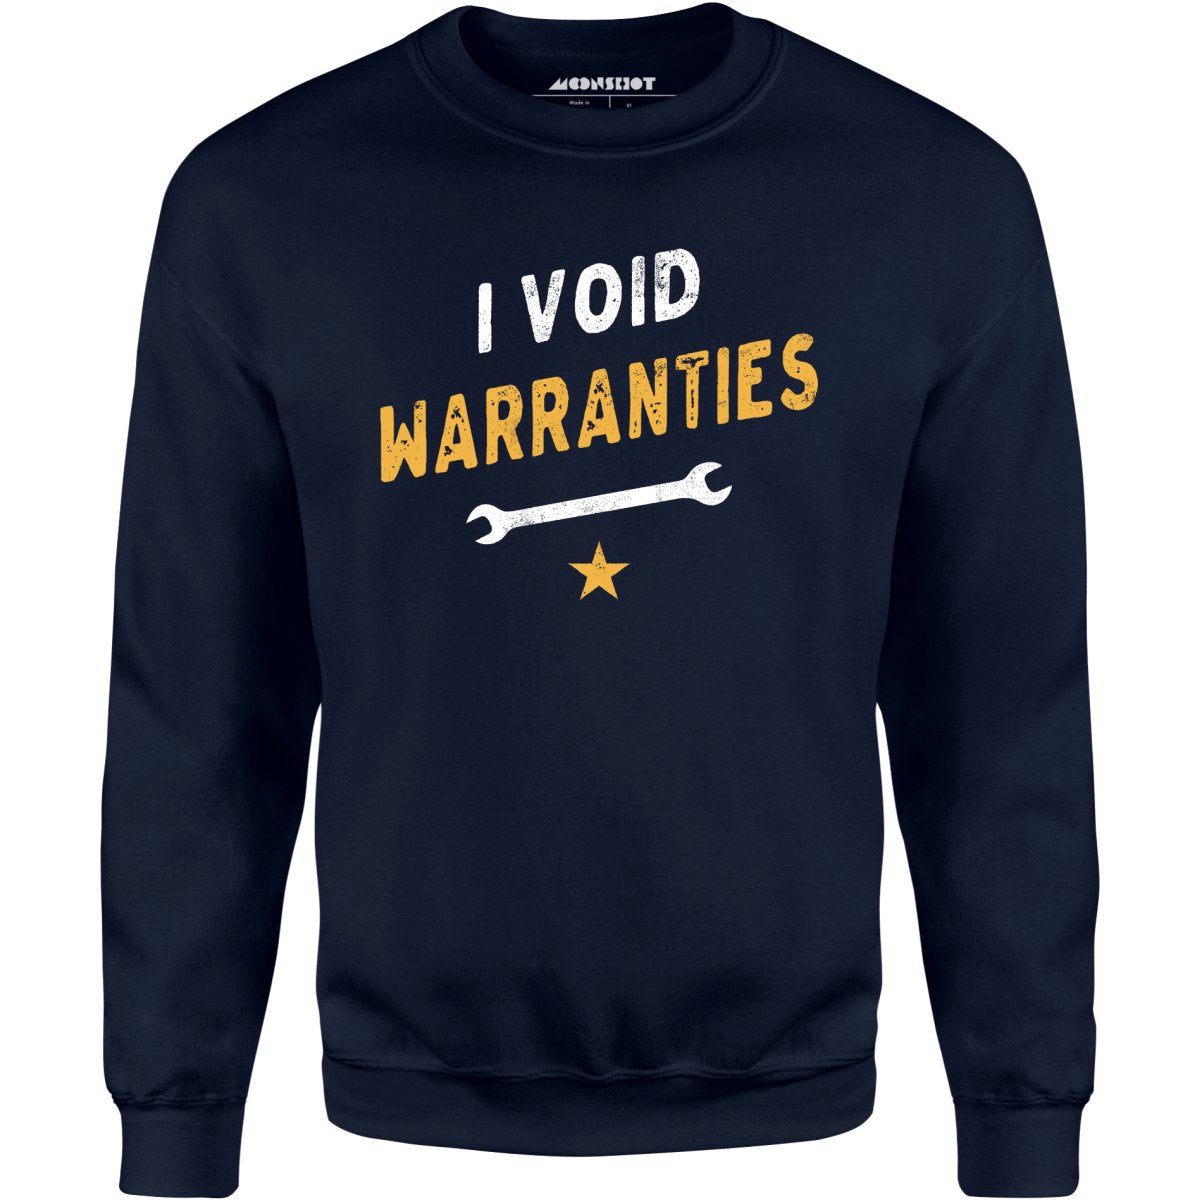 I Void Warranties - Unisex Sweatshirt